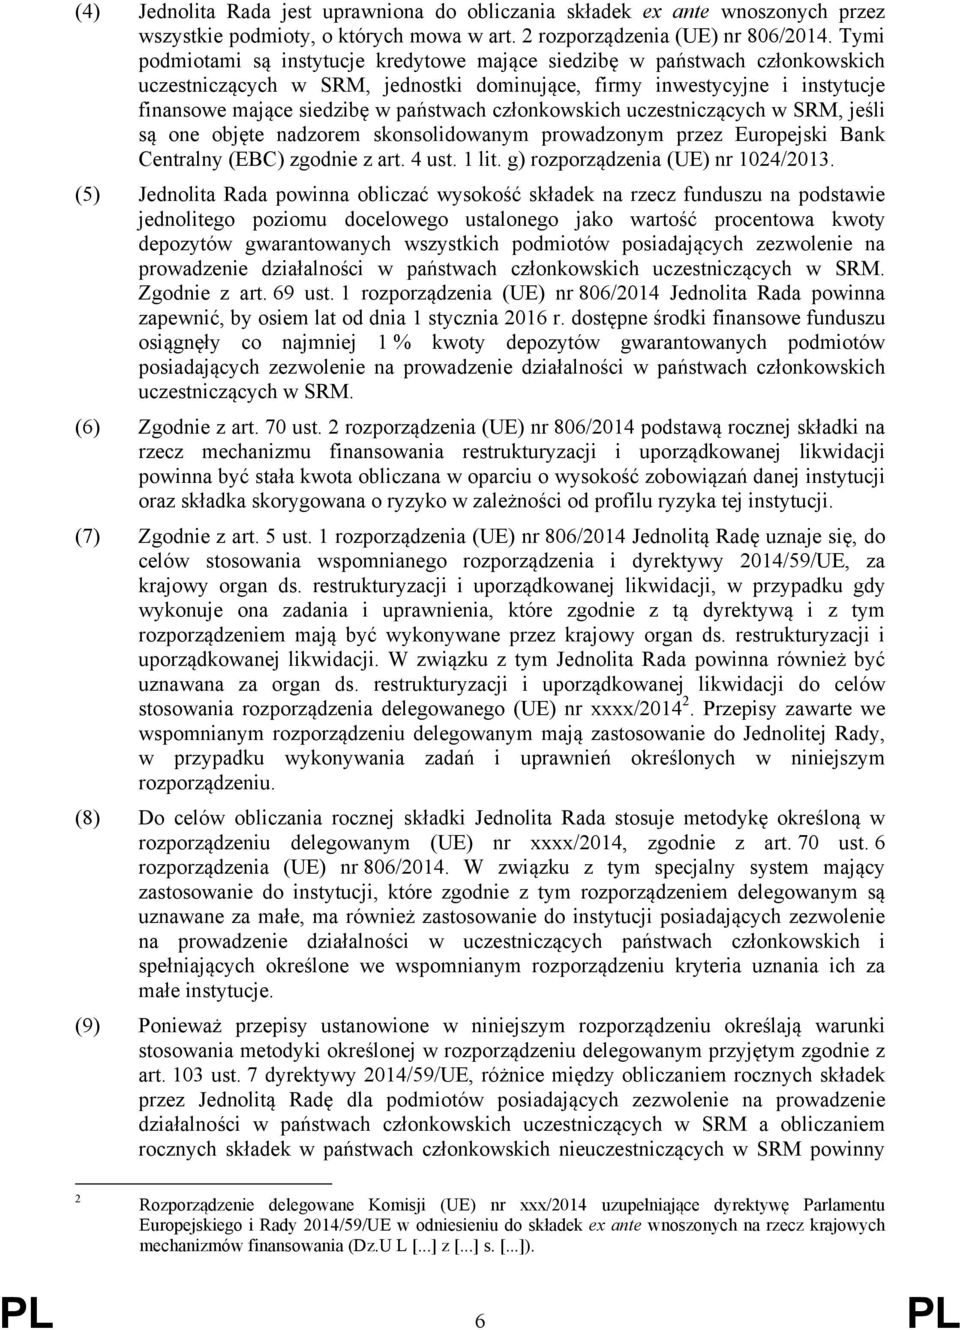 członkowskich uczestniczących w SRM, jeśli są one objęte nadzorem skonsolidowanym prowadzonym przez Europejski Bank Centralny (EBC) zgodnie z art. 4 ust. 1 lit. g) rozporządzenia (UE) nr 1024/2013.